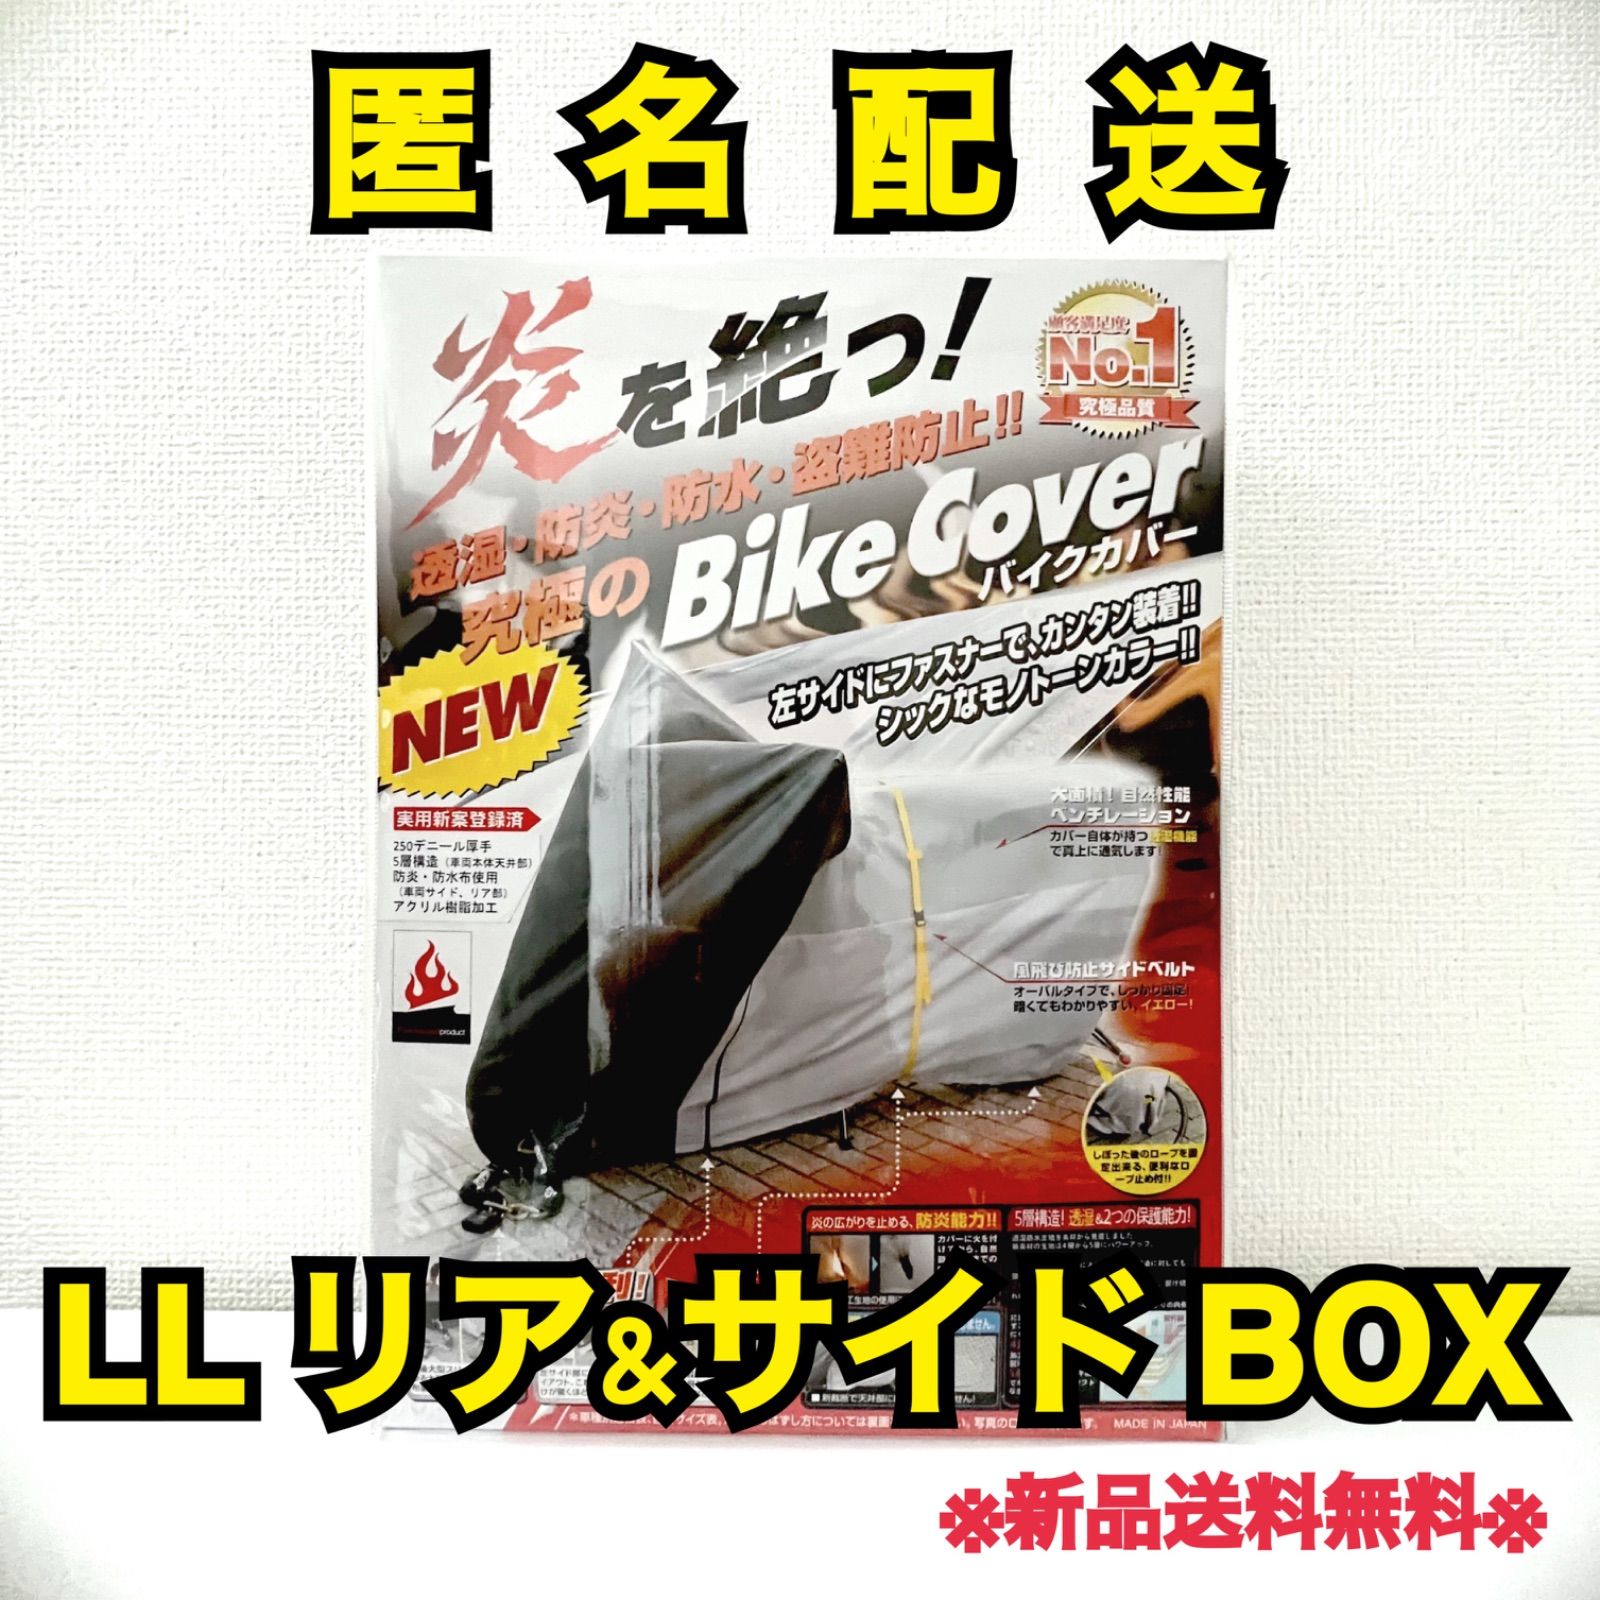 ◻︎究極のバイクカバー LL リアサイド BOX